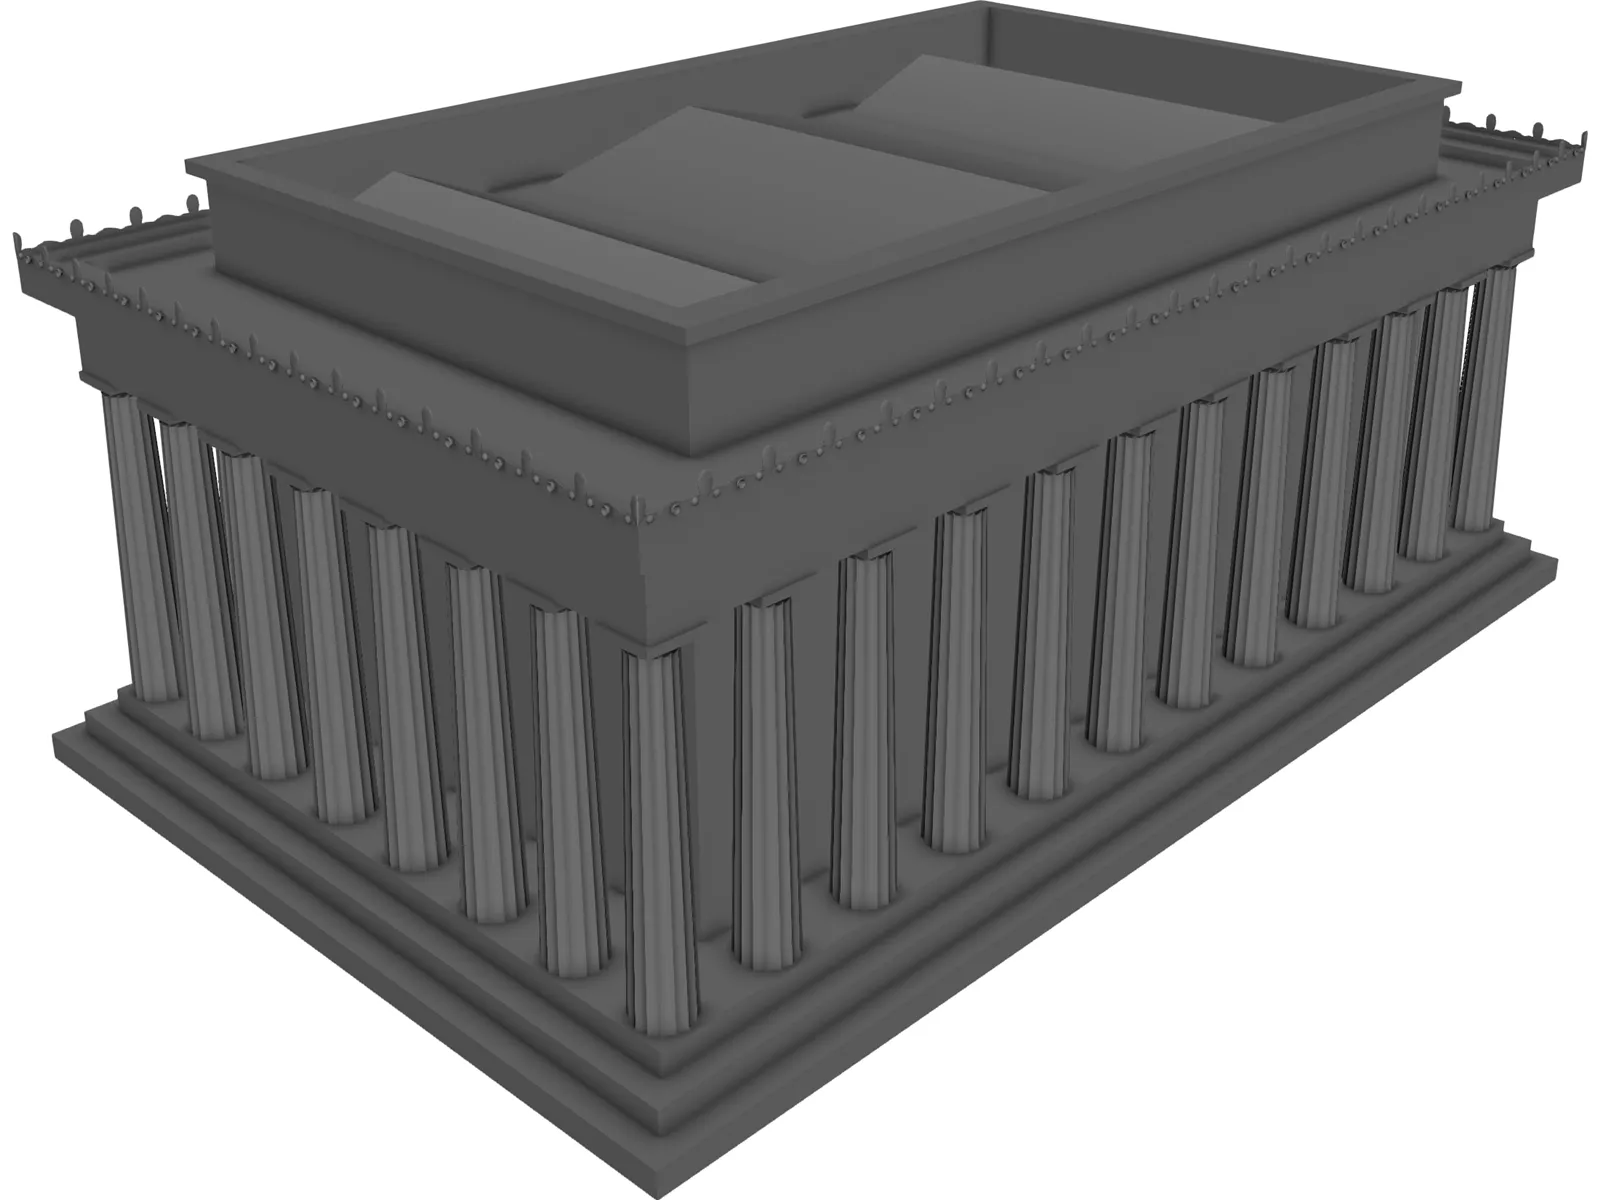 Lincoln Memorial 3D Model